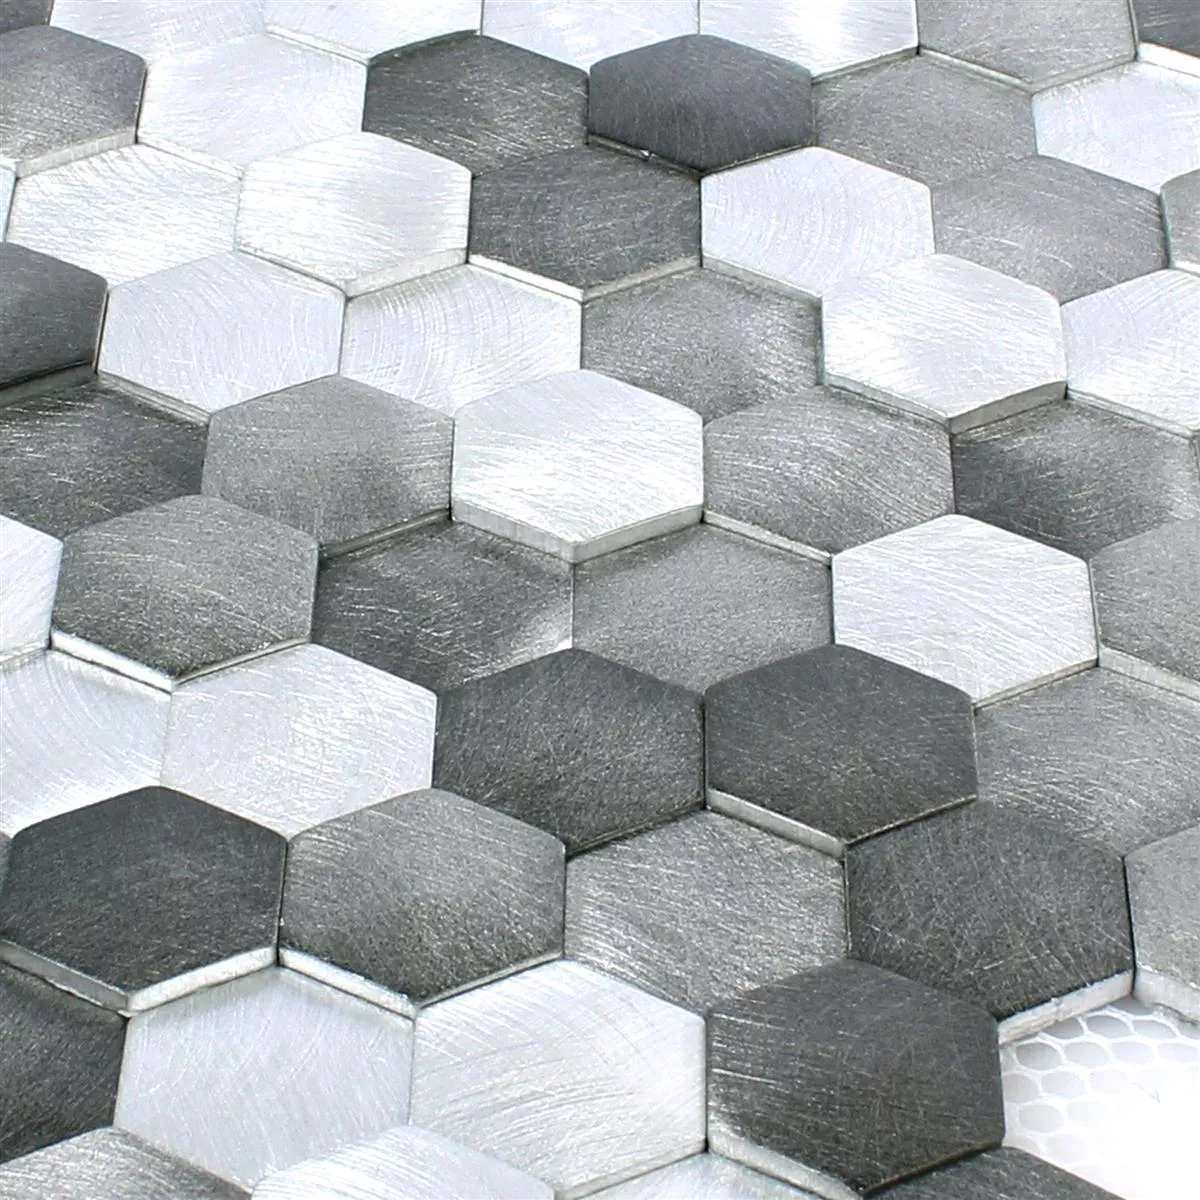 Sample Mosaic Tiles Sindos Hexagon 3D Black Silver